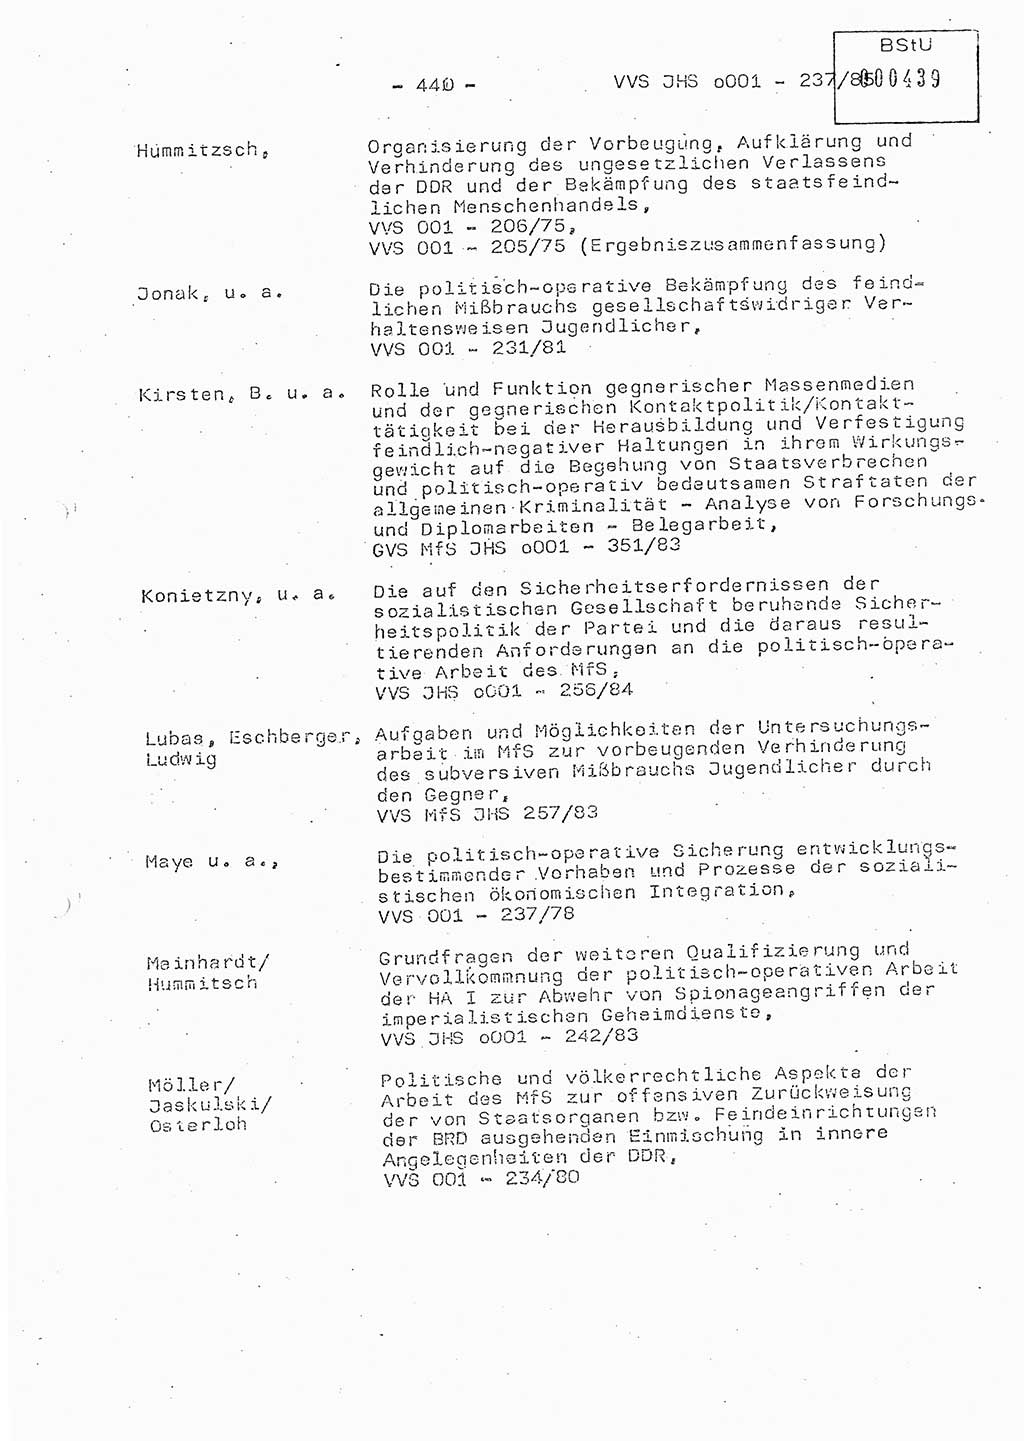 Dissertation Oberstleutnant Peter Jakulski (JHS), Oberstleutnat Christian Rudolph (HA Ⅸ), Major Horst Böttger (ZMD), Major Wolfgang Grüneberg (JHS), Major Albert Meutsch (JHS), Ministerium für Staatssicherheit (MfS) [Deutsche Demokratische Republik (DDR)], Juristische Hochschule (JHS), Vertrauliche Verschlußsache (VVS) o001-237/85, Potsdam 1985, Seite 440 (Diss. MfS DDR JHS VVS o001-237/85 1985, S. 440)